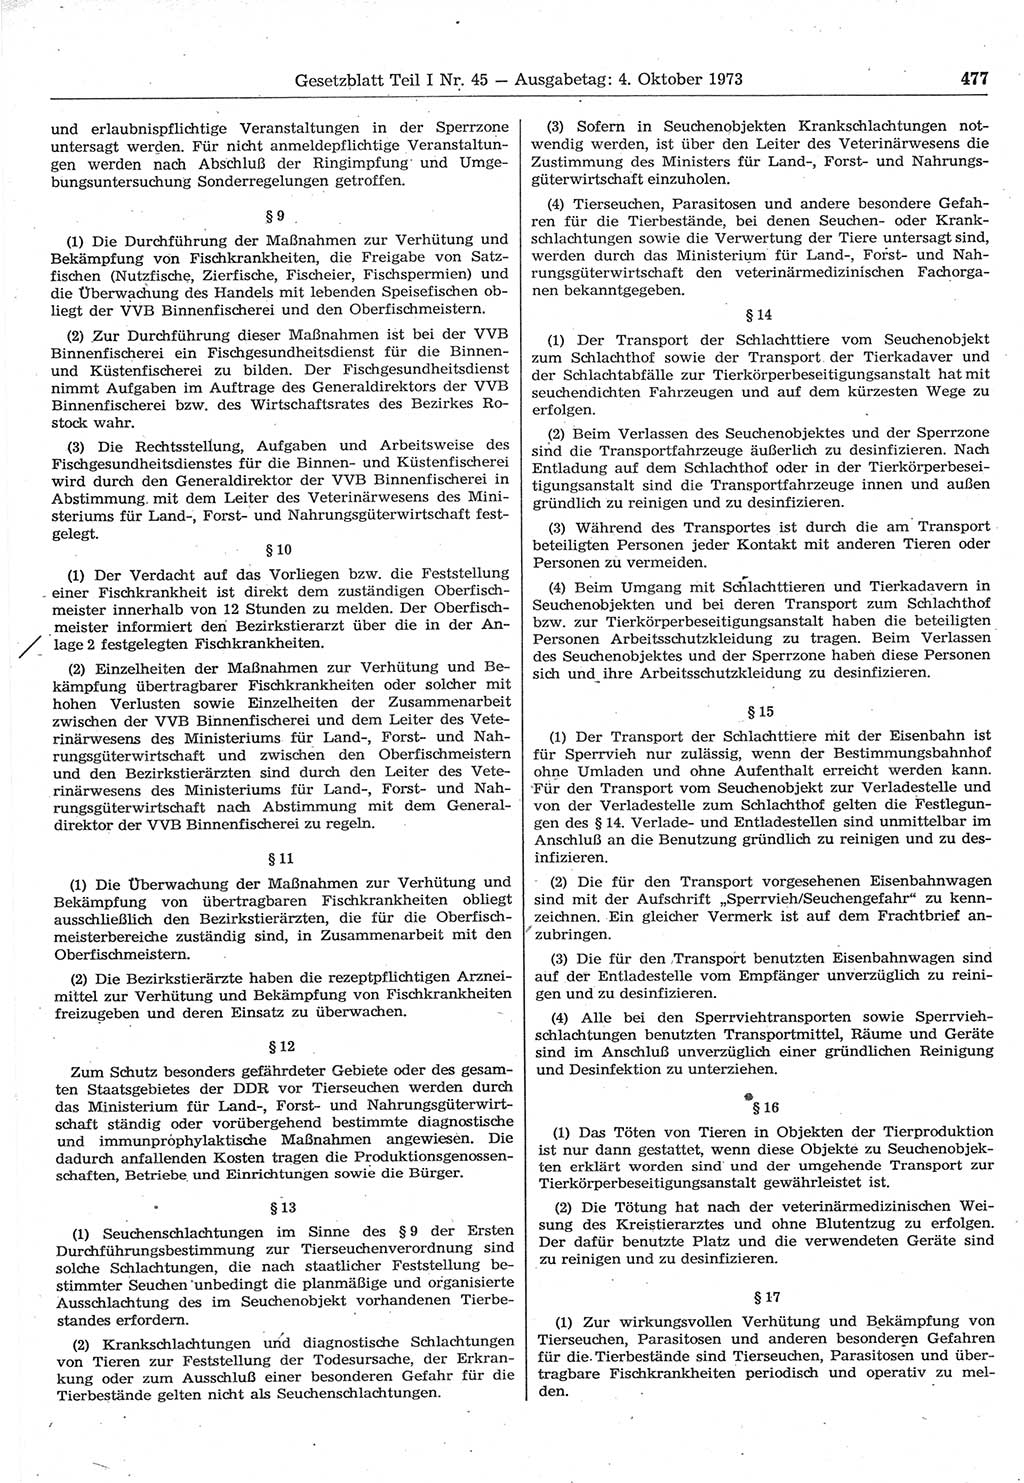 Gesetzblatt (GBl.) der Deutschen Demokratischen Republik (DDR) Teil Ⅰ 1973, Seite 477 (GBl. DDR Ⅰ 1973, S. 477)